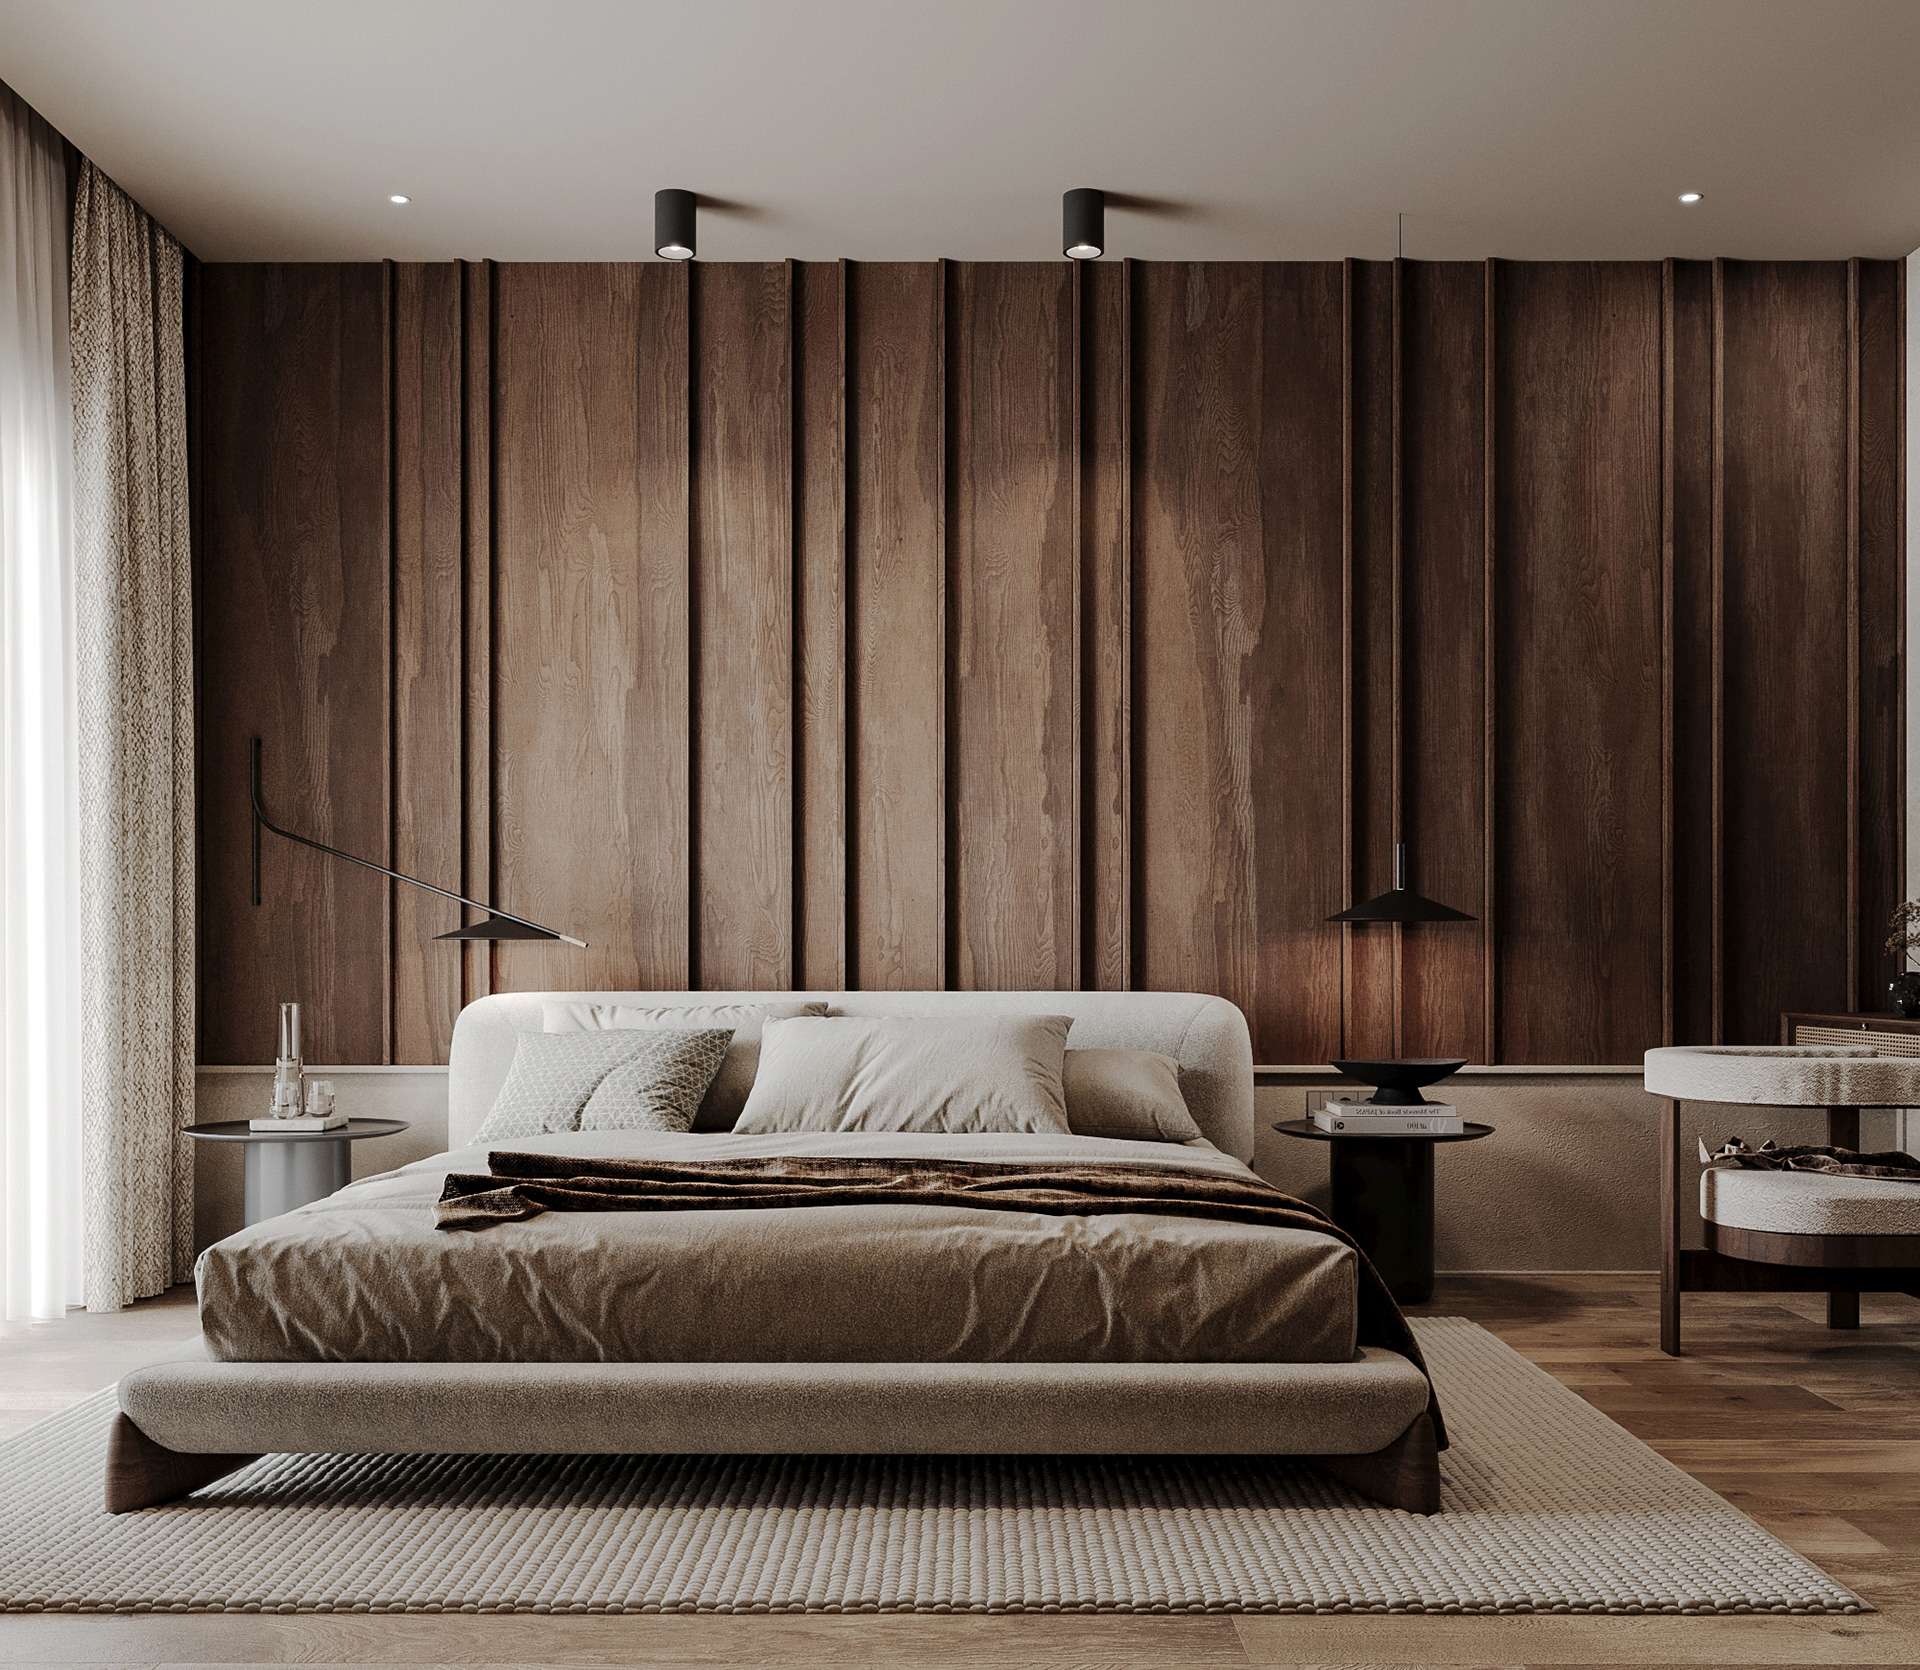 Giường là món đồ nội thất quan trọng và trung tâm trong thiết kế phòng ngủ